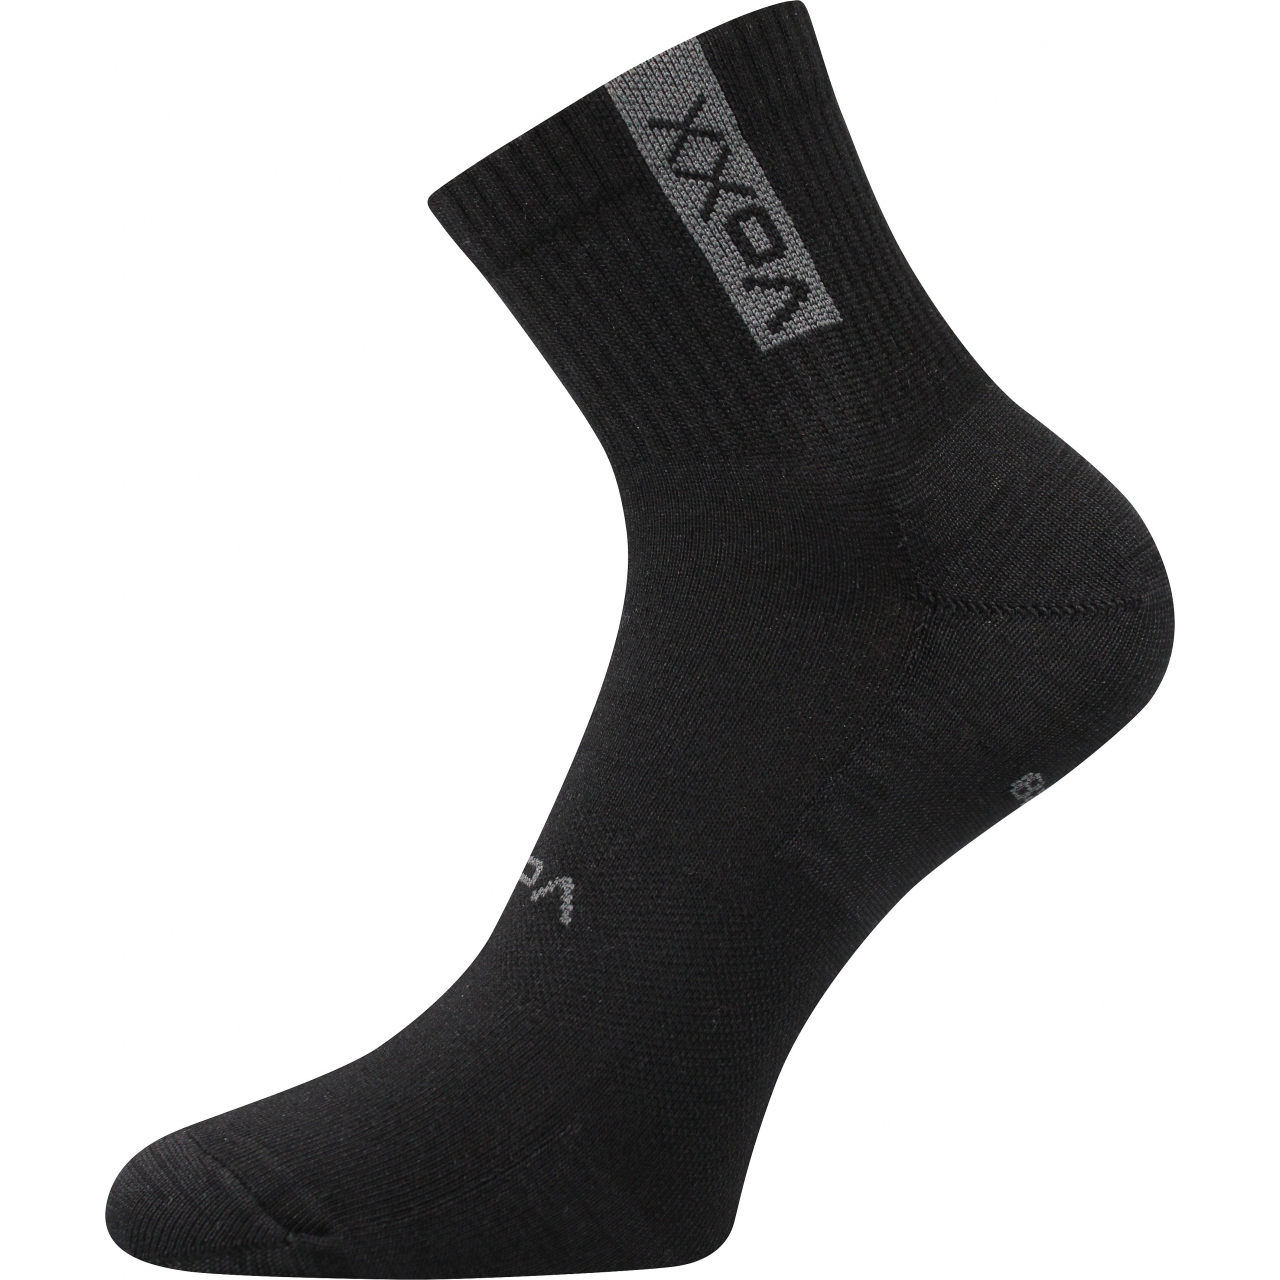 Ponožky sportovní unisex Voxx Brox - černé, 47-50